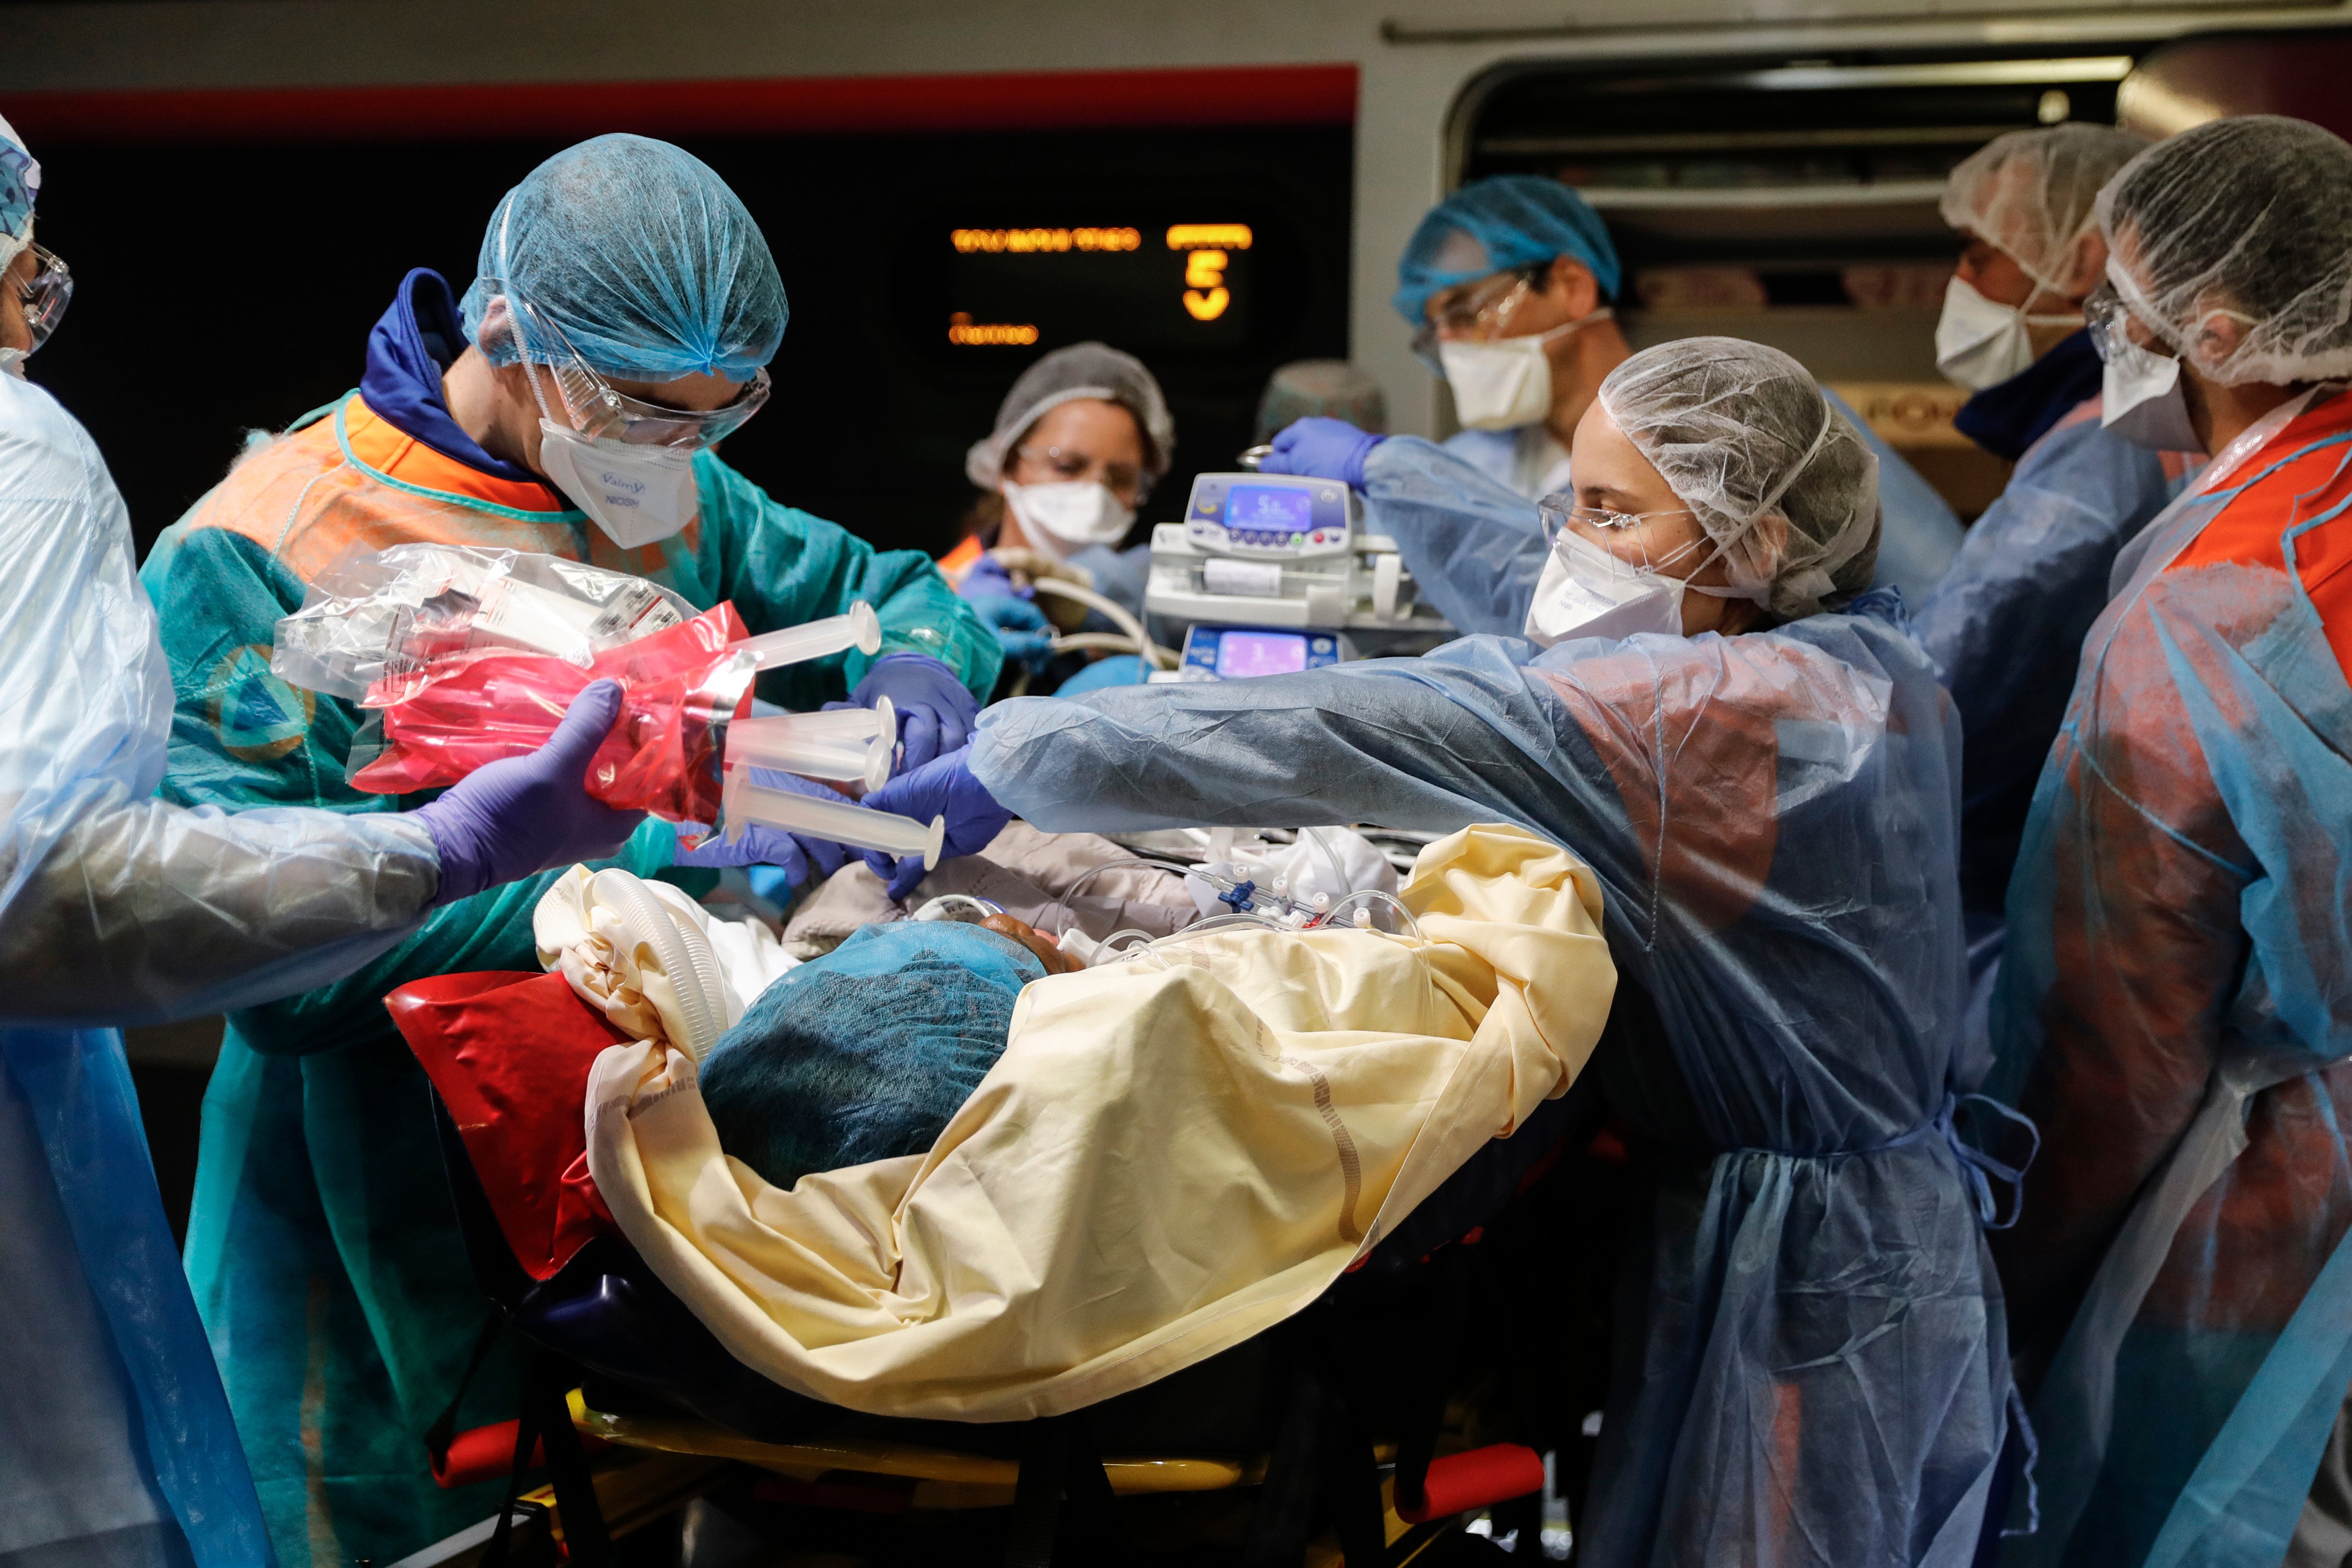 Equipe médica remove paciente infectado com o coronavírus em um trem na  estação de Gare d'Austerlitz, em Paris.  01/04/2020 - Foto: THOMAS SAMSON/ASSOCIATED PRESS/ESTADÃO CONTEÚDO